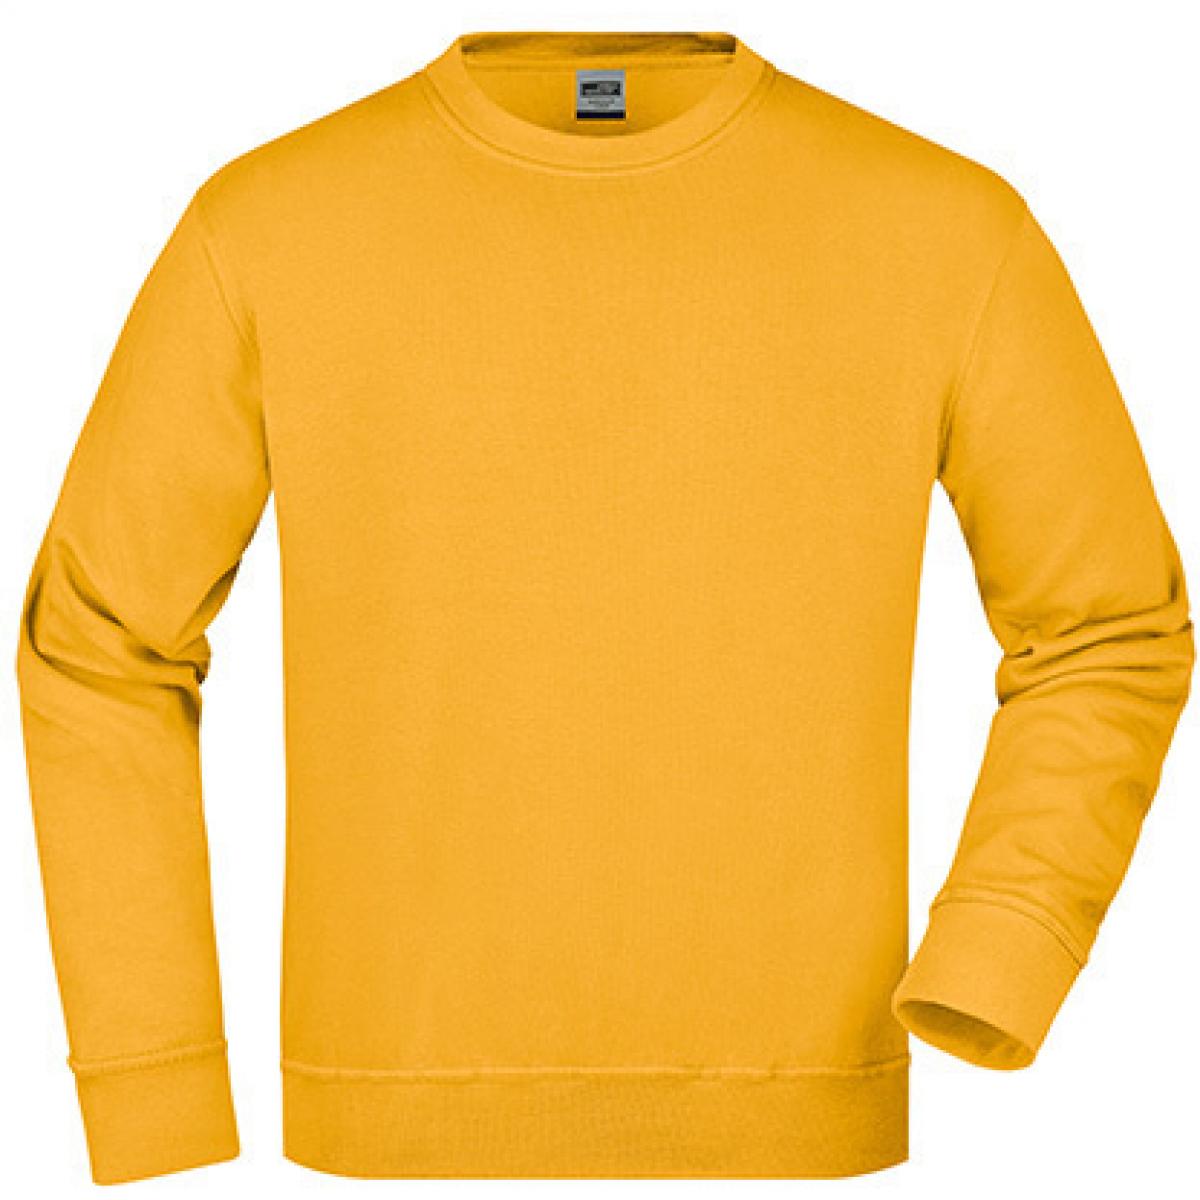 Hersteller: James+Nicholson Herstellernummer: JN840 Artikelbezeichnung: Workwear Sweatshirt / Waschbar bis 60C Farbe: Gold Yellow